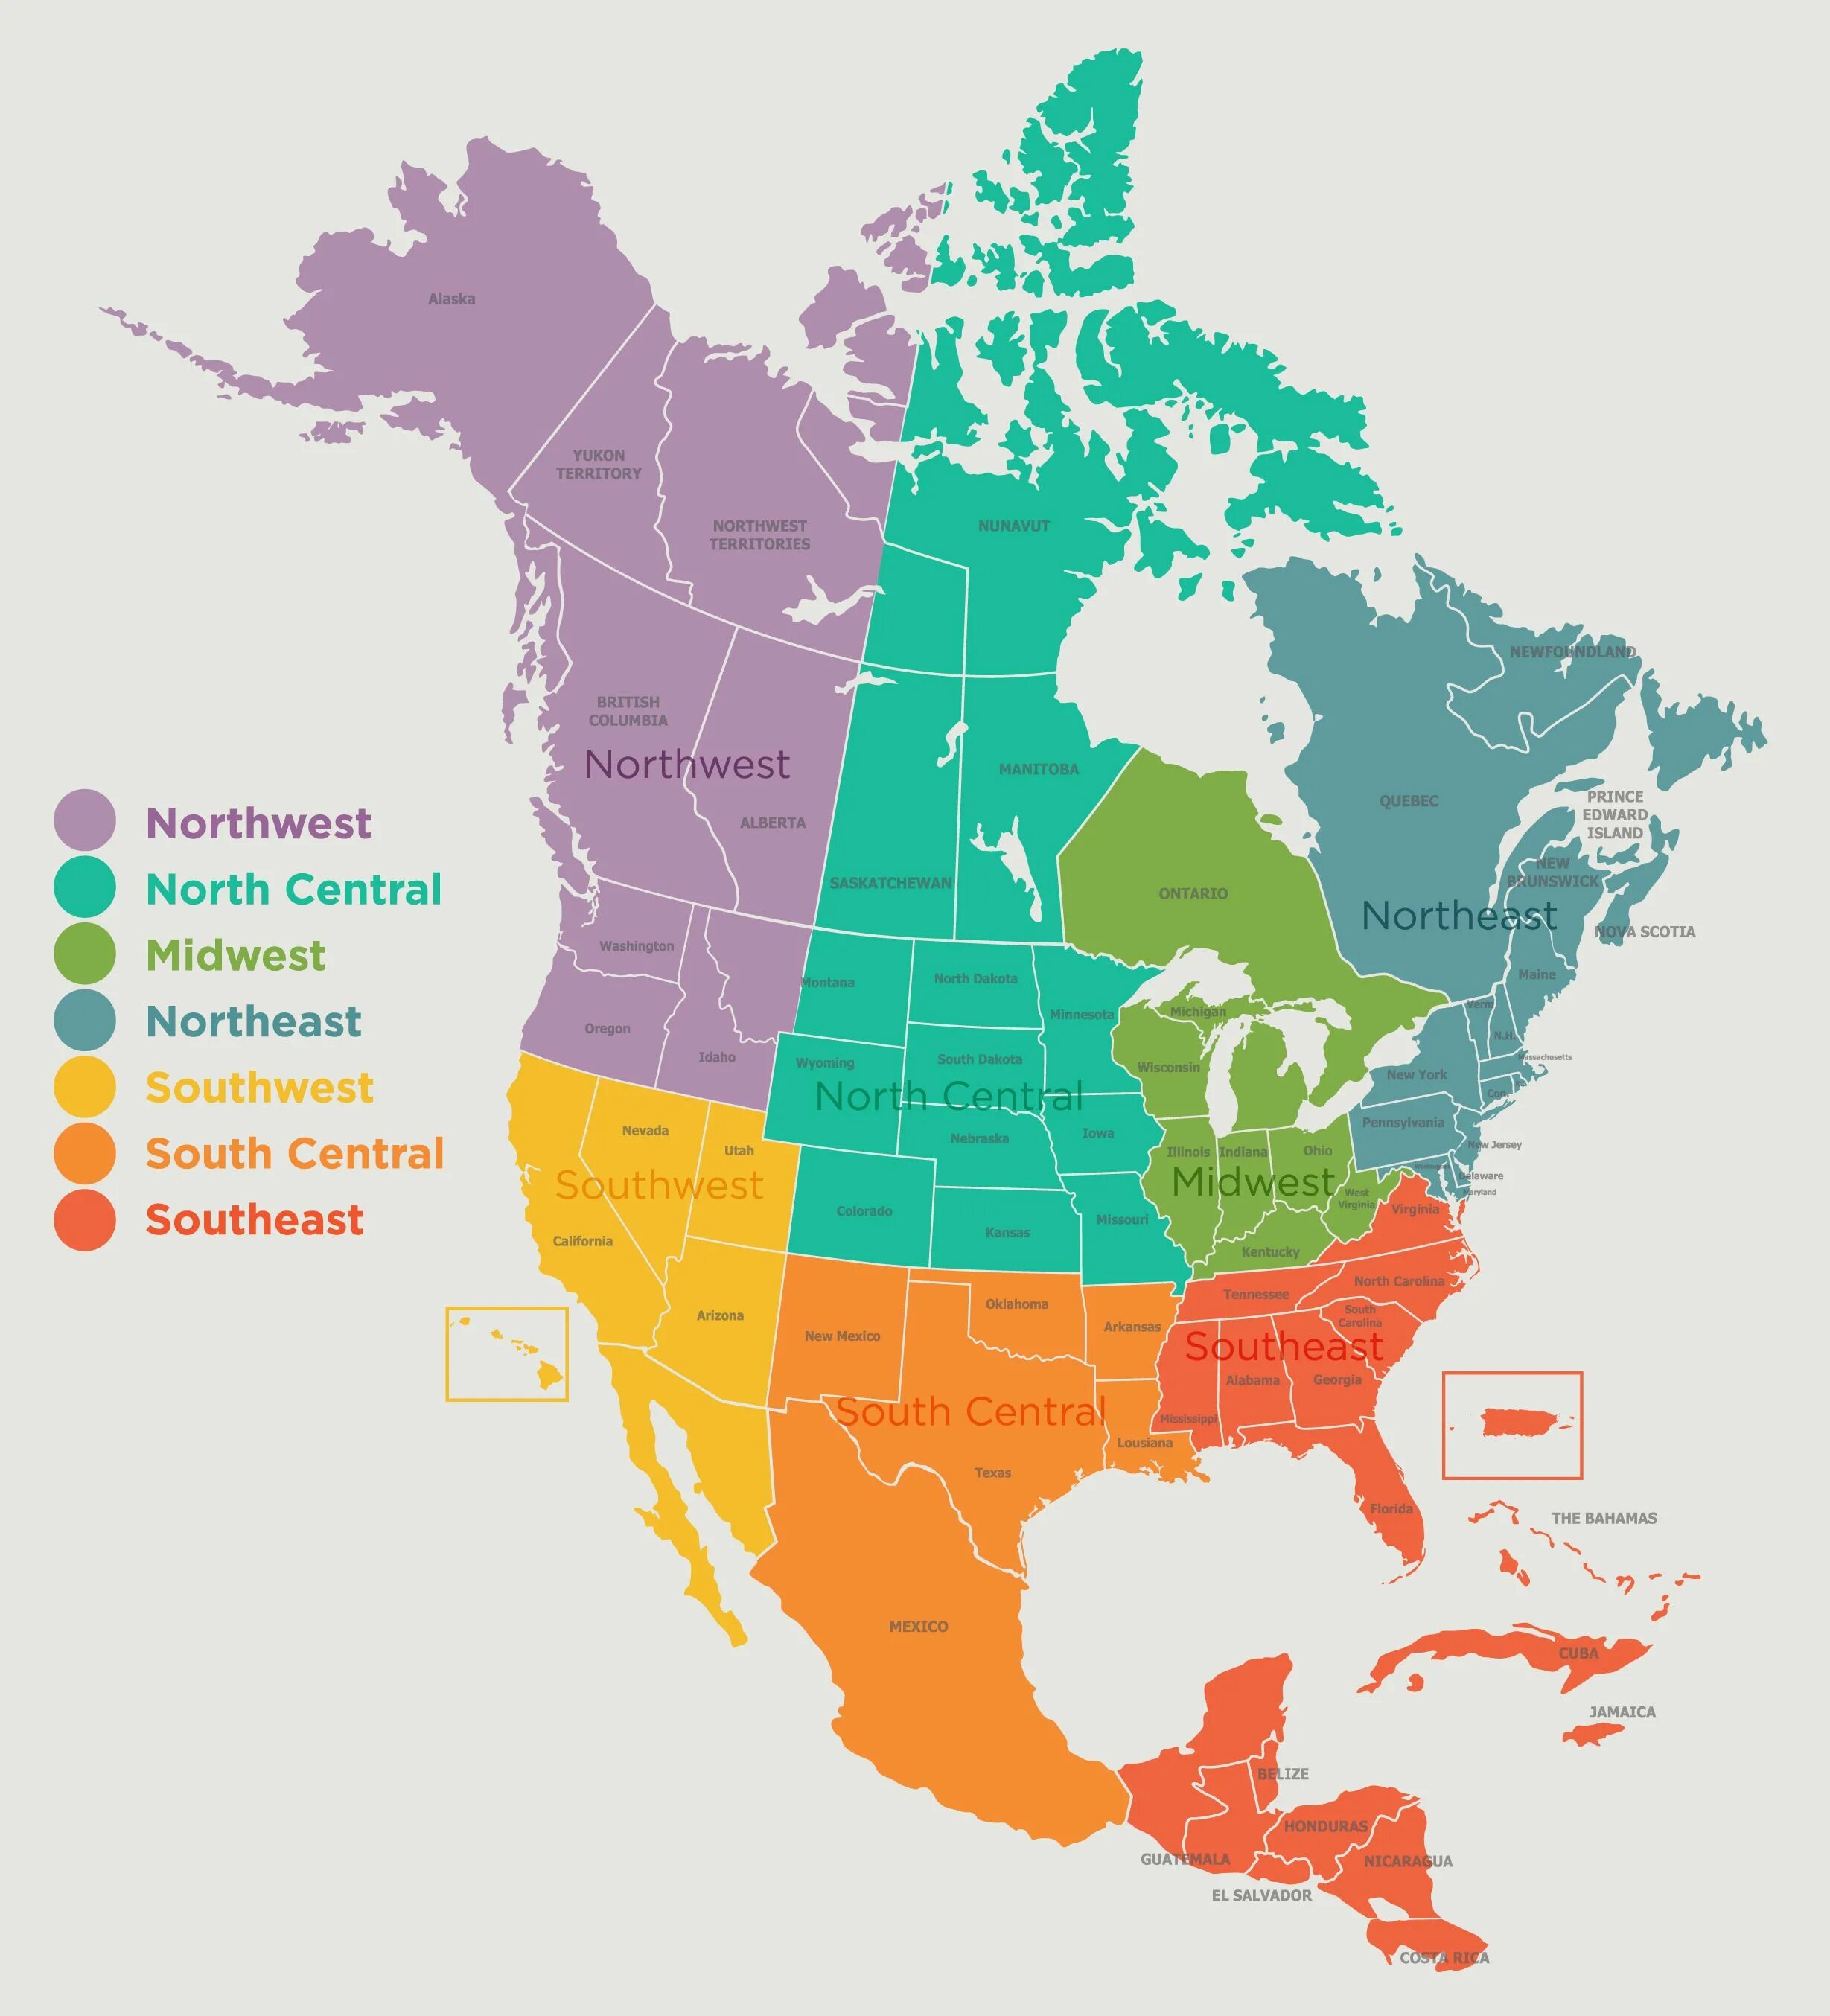 Границы северной америки какие. Субрегионы Северной Америки на карте. Регионы Северной Америки на карте. Регионы США на карте Северная Америка. Административное деление Северной Америки.